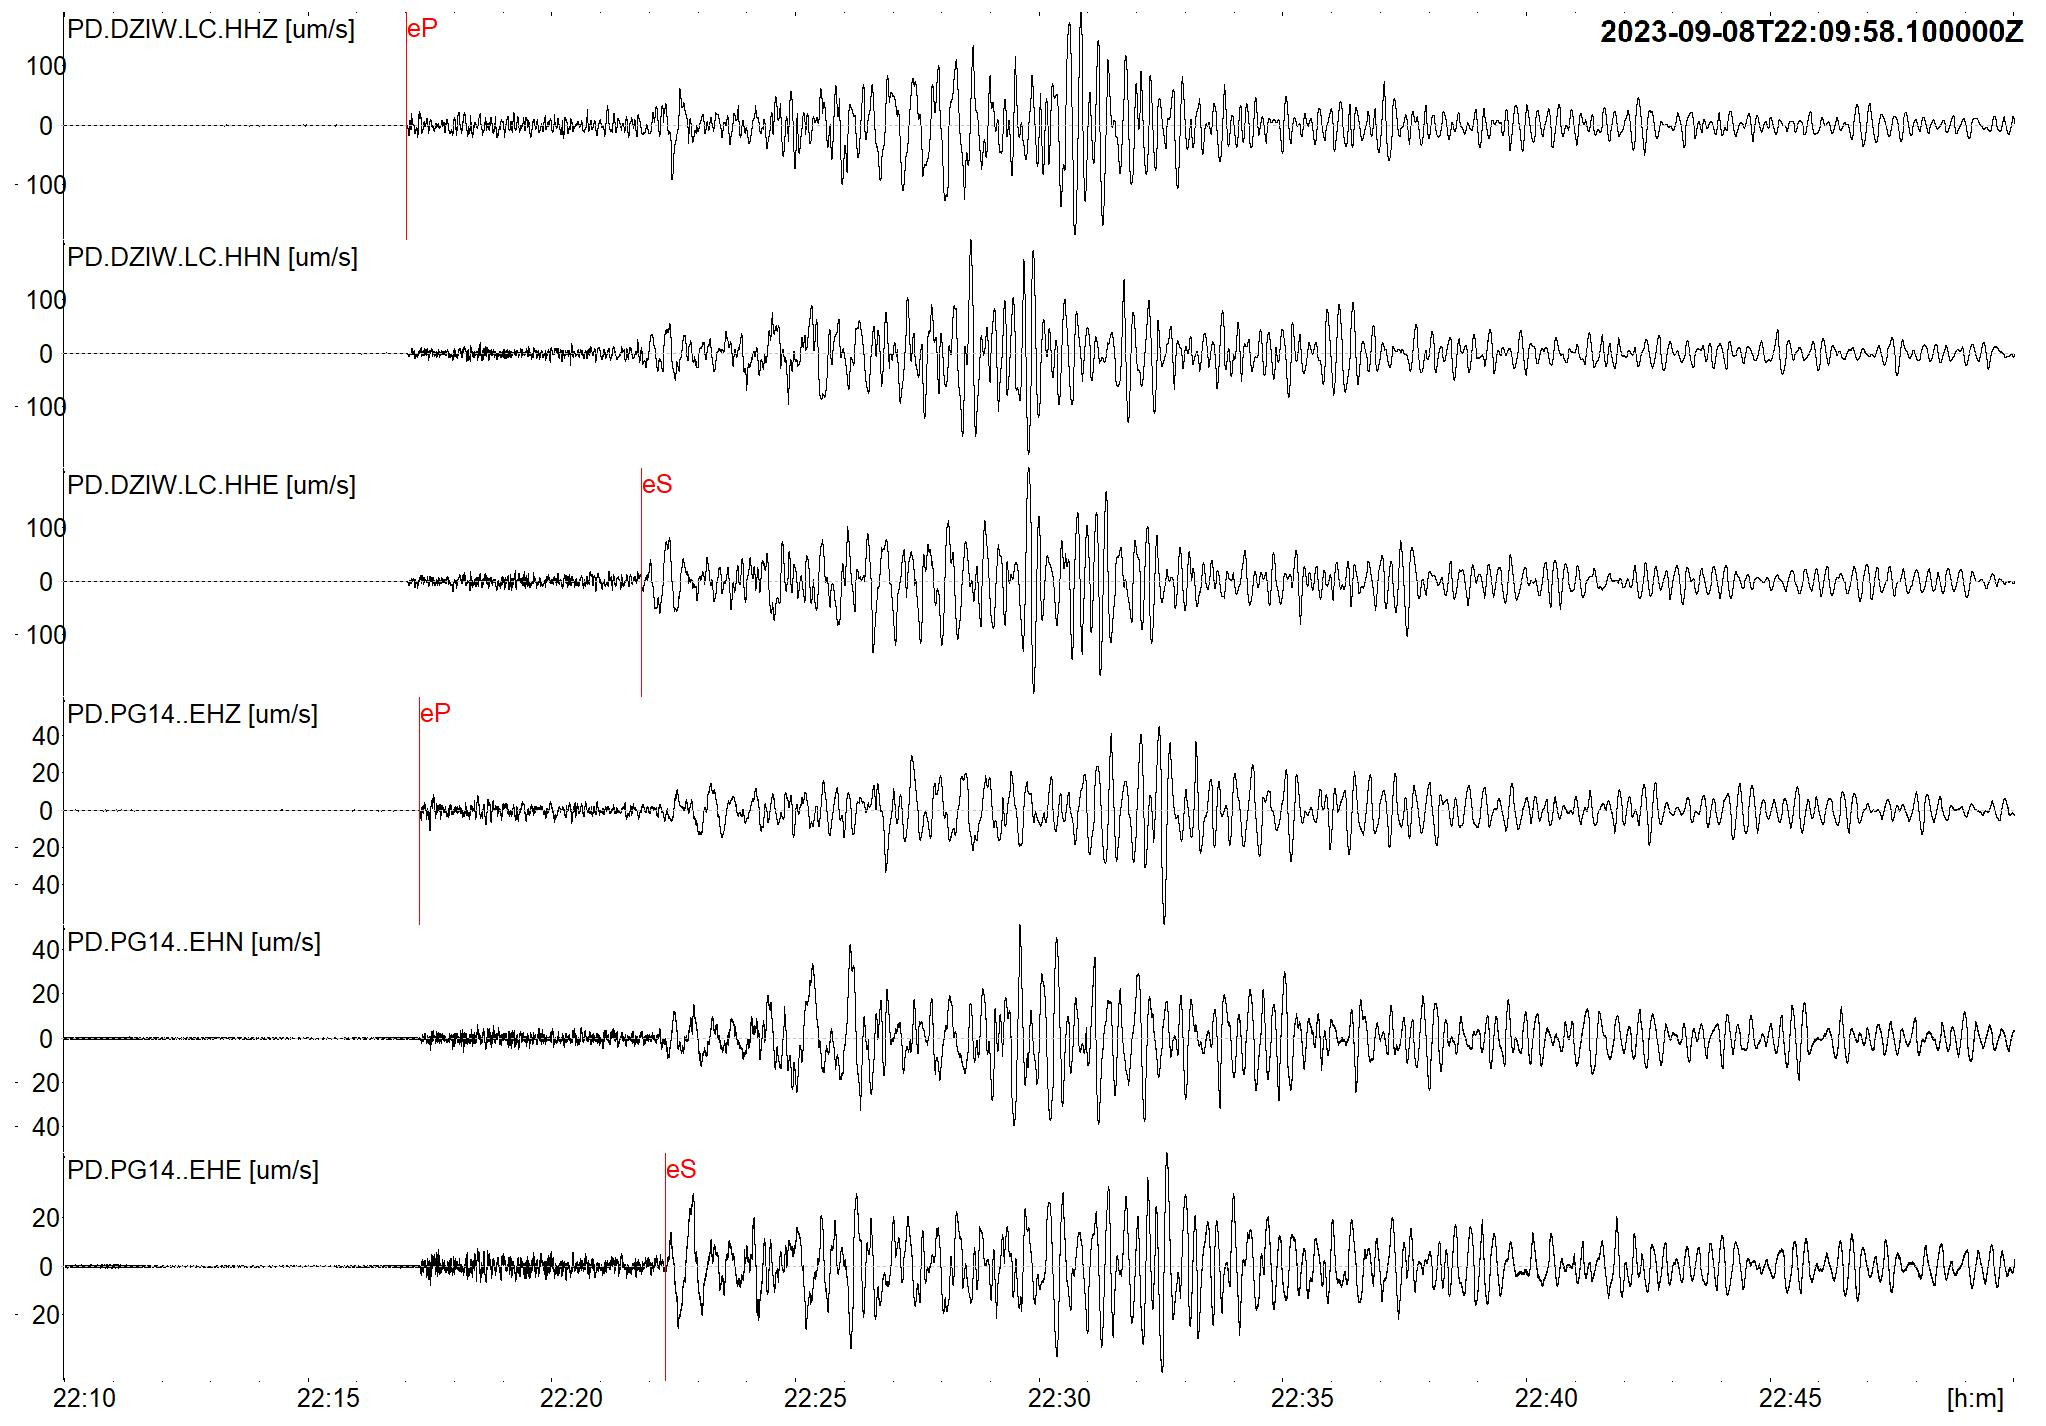 Wykres Obraz falowy z zapisem rejestracji trzęsienia ziemi o magnitudzie M6.8 z epicentrum w Maroku z 8 września 2023 r., godz. 22:11:02.2 (UTC) zarejestrowany przez szerokopasmowe stacje sejsmologiczne PSG zlokalizowane w laboratoriach geodynamicznych w Hołownie (PG14) i Dziwiu (DZIW). Na wykresie składowej Z zaznaczono pierwsze wstąpienia fali sejsmicznej (P)